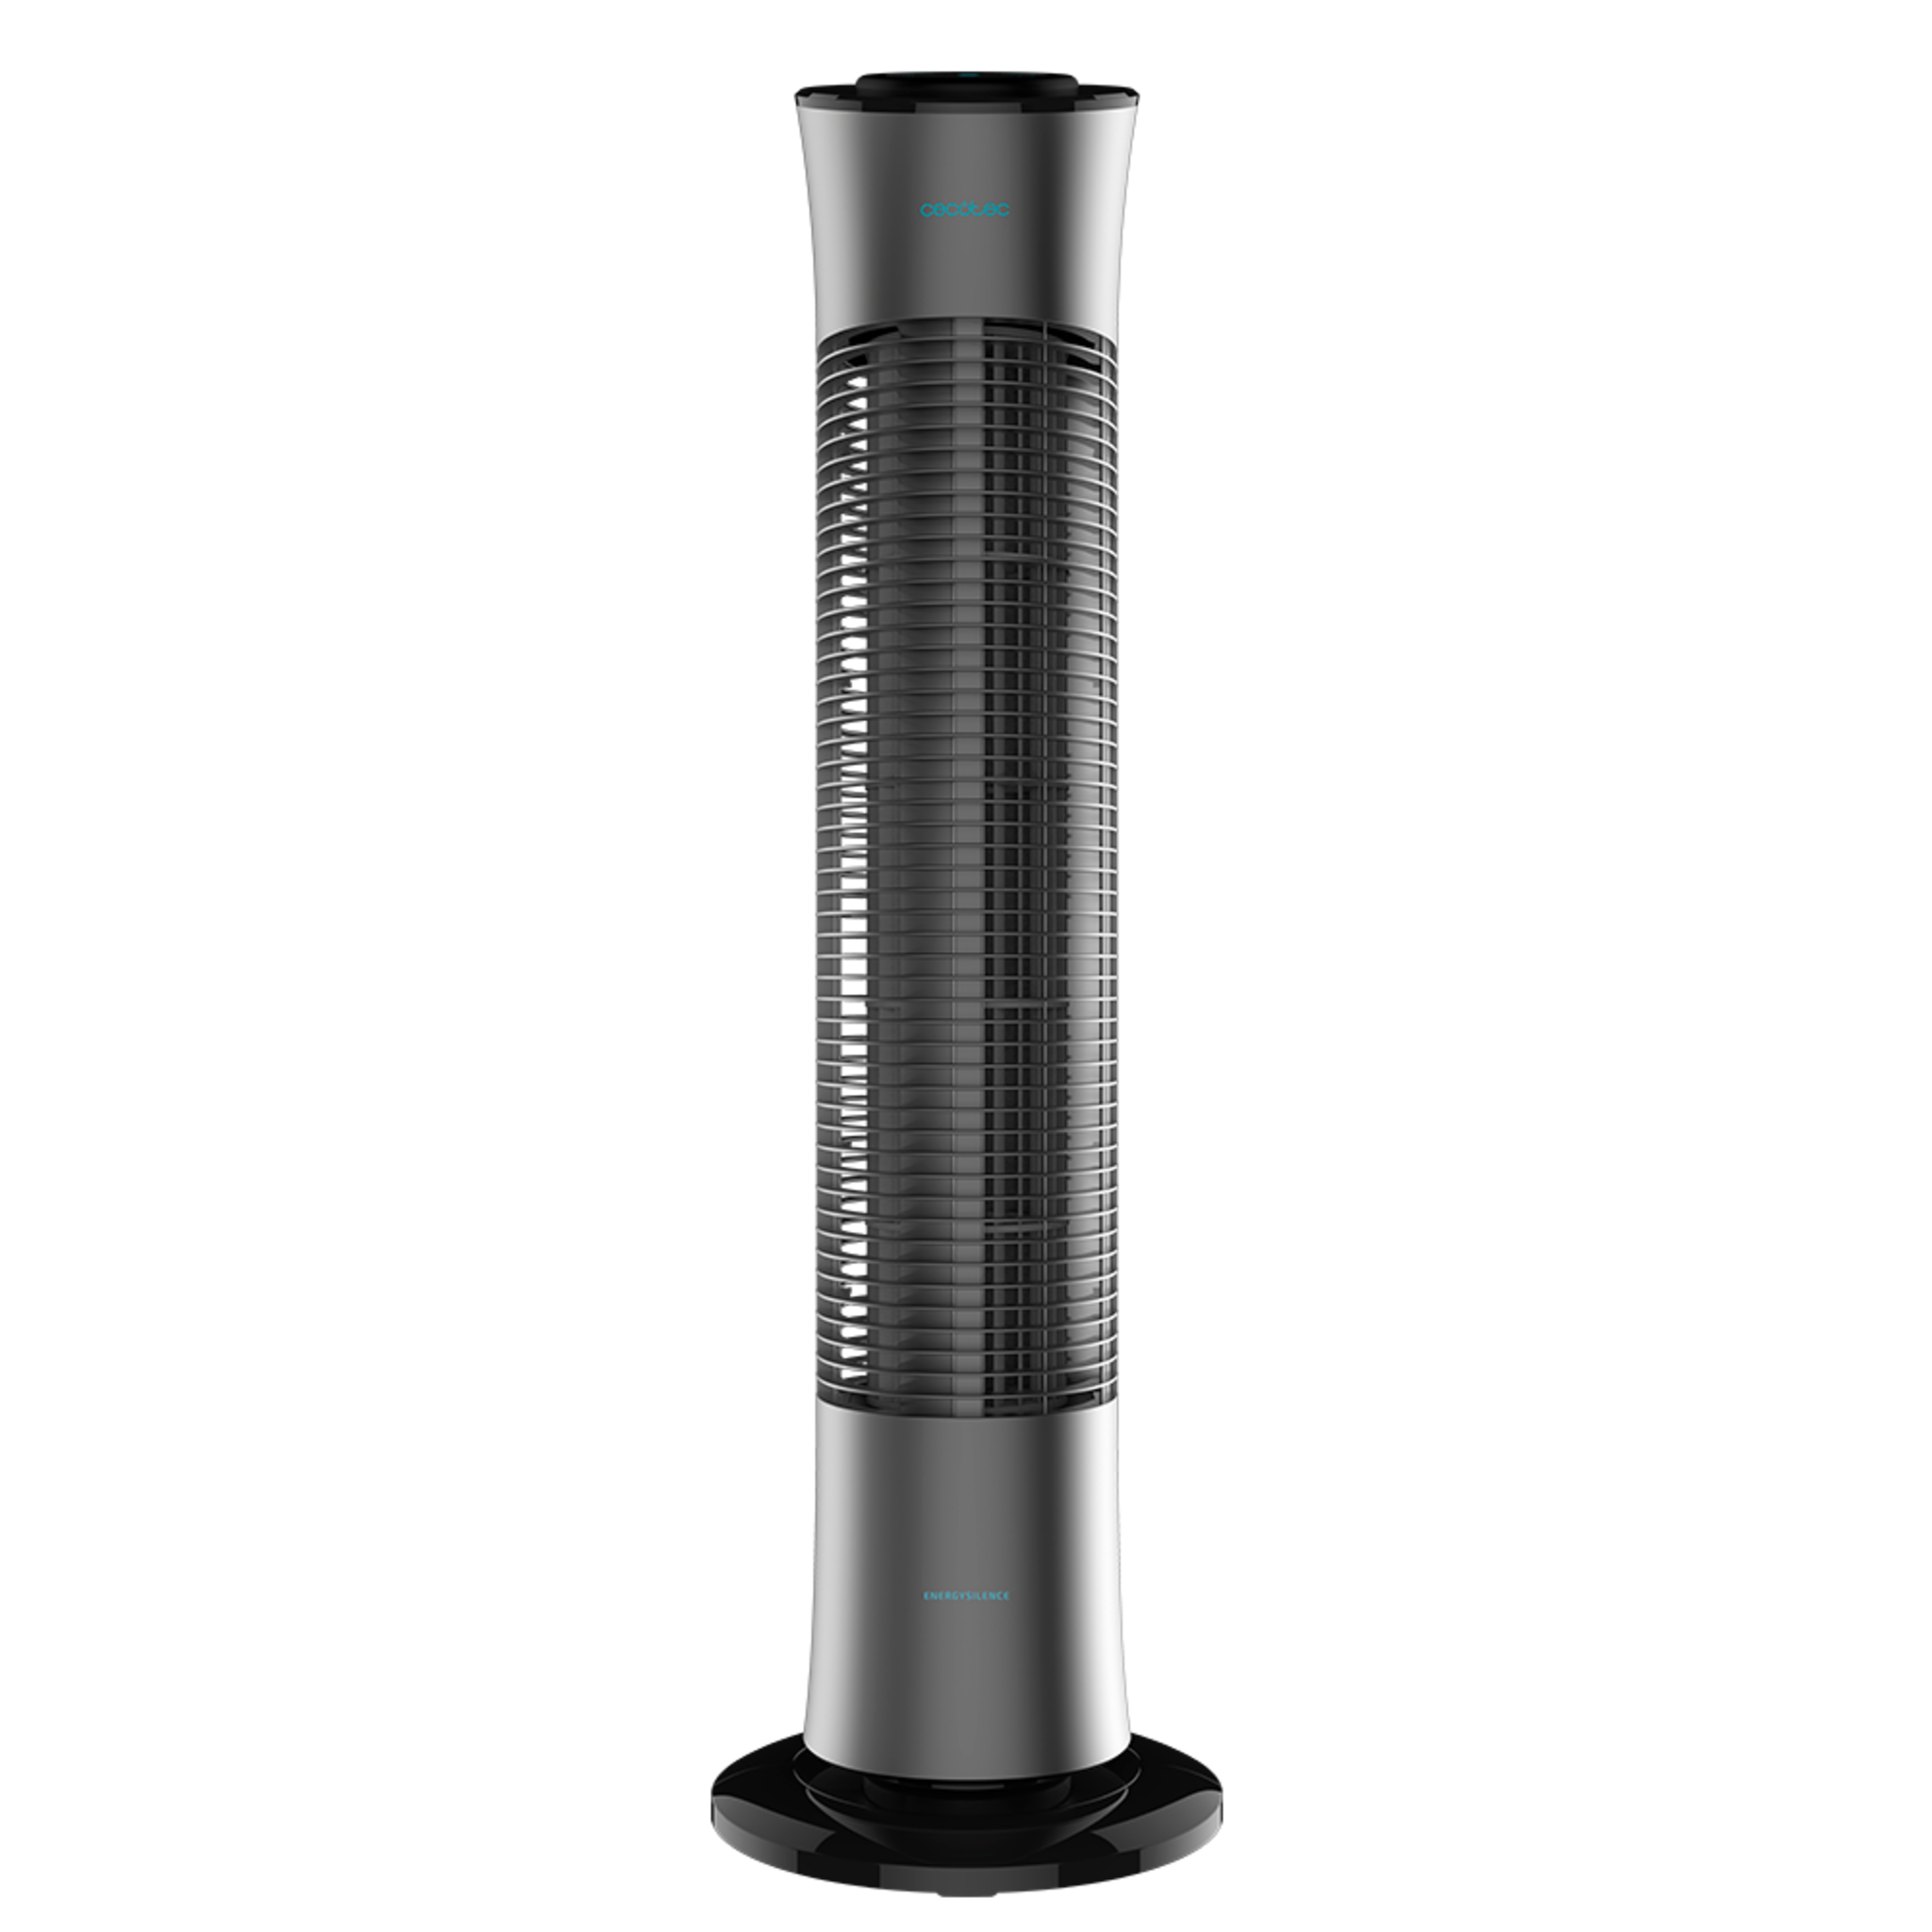 Ventilatore a colonna EnergySilence 7090 Skyline. Altezza 30''76 cm), oscillante, motore in rame, 3 velocità, timer 7,5 ore, telecomando, 45W